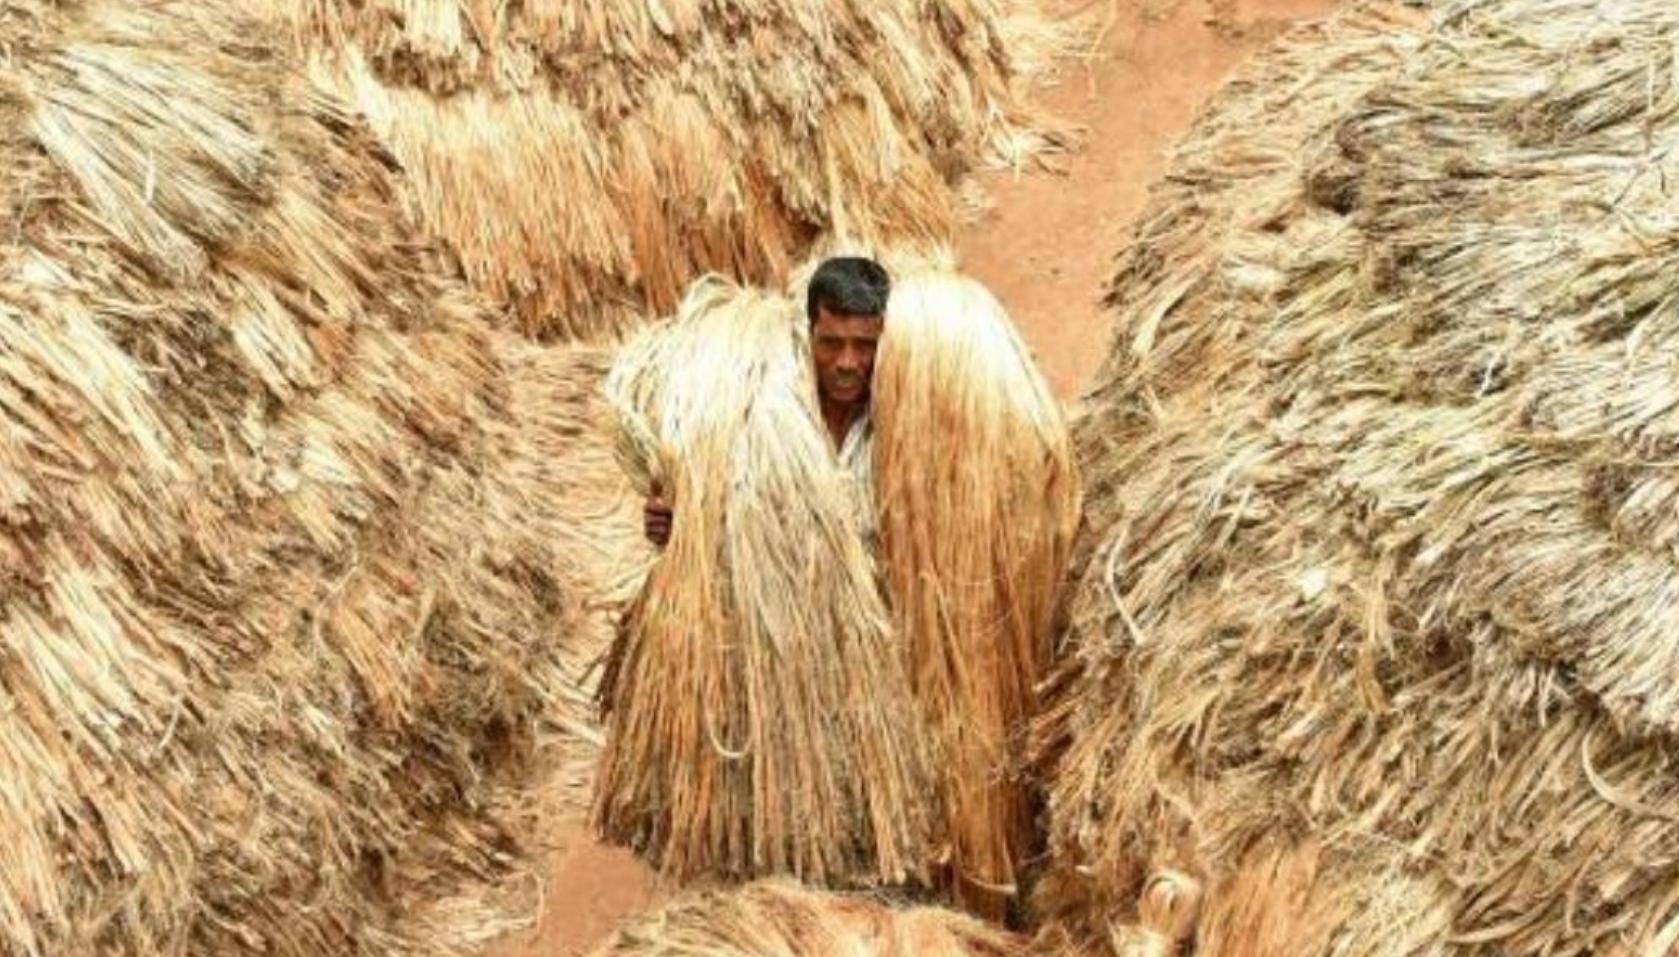 中国无人种的黄麻 为何却被印度当成 铁饭碗 养活近千万人 种植 纤维 我国